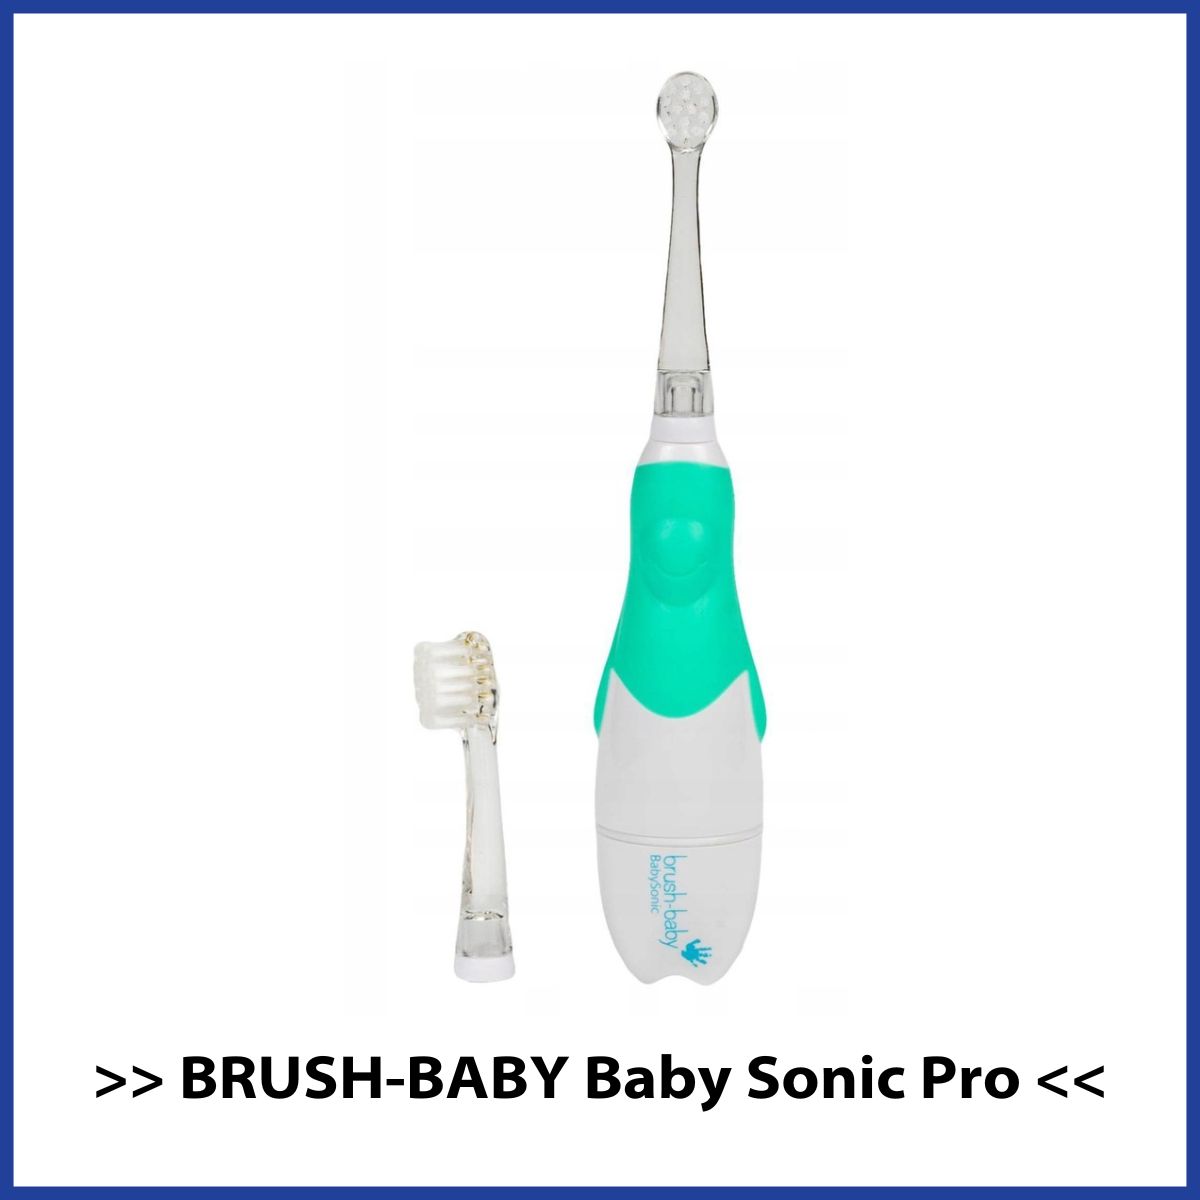 Ranking szczoteczek sonicznych dla dzieci Brush Baby Baby Sonic Pro w kolorze zielonym